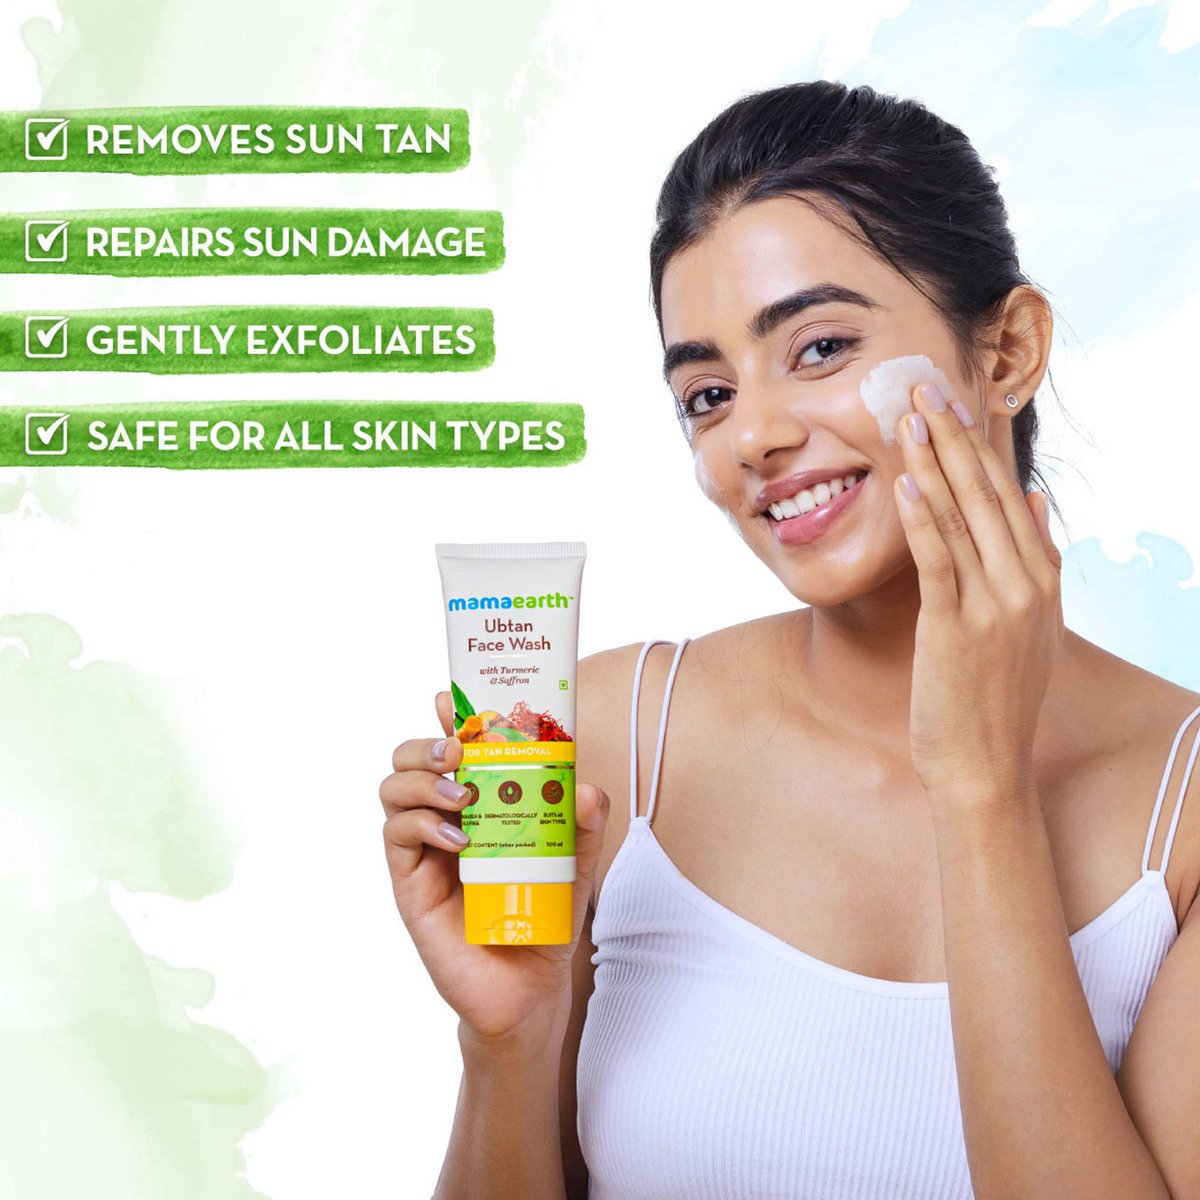 Mamaearth Tea Tree Facewash for Acne & Pimples 100 ml